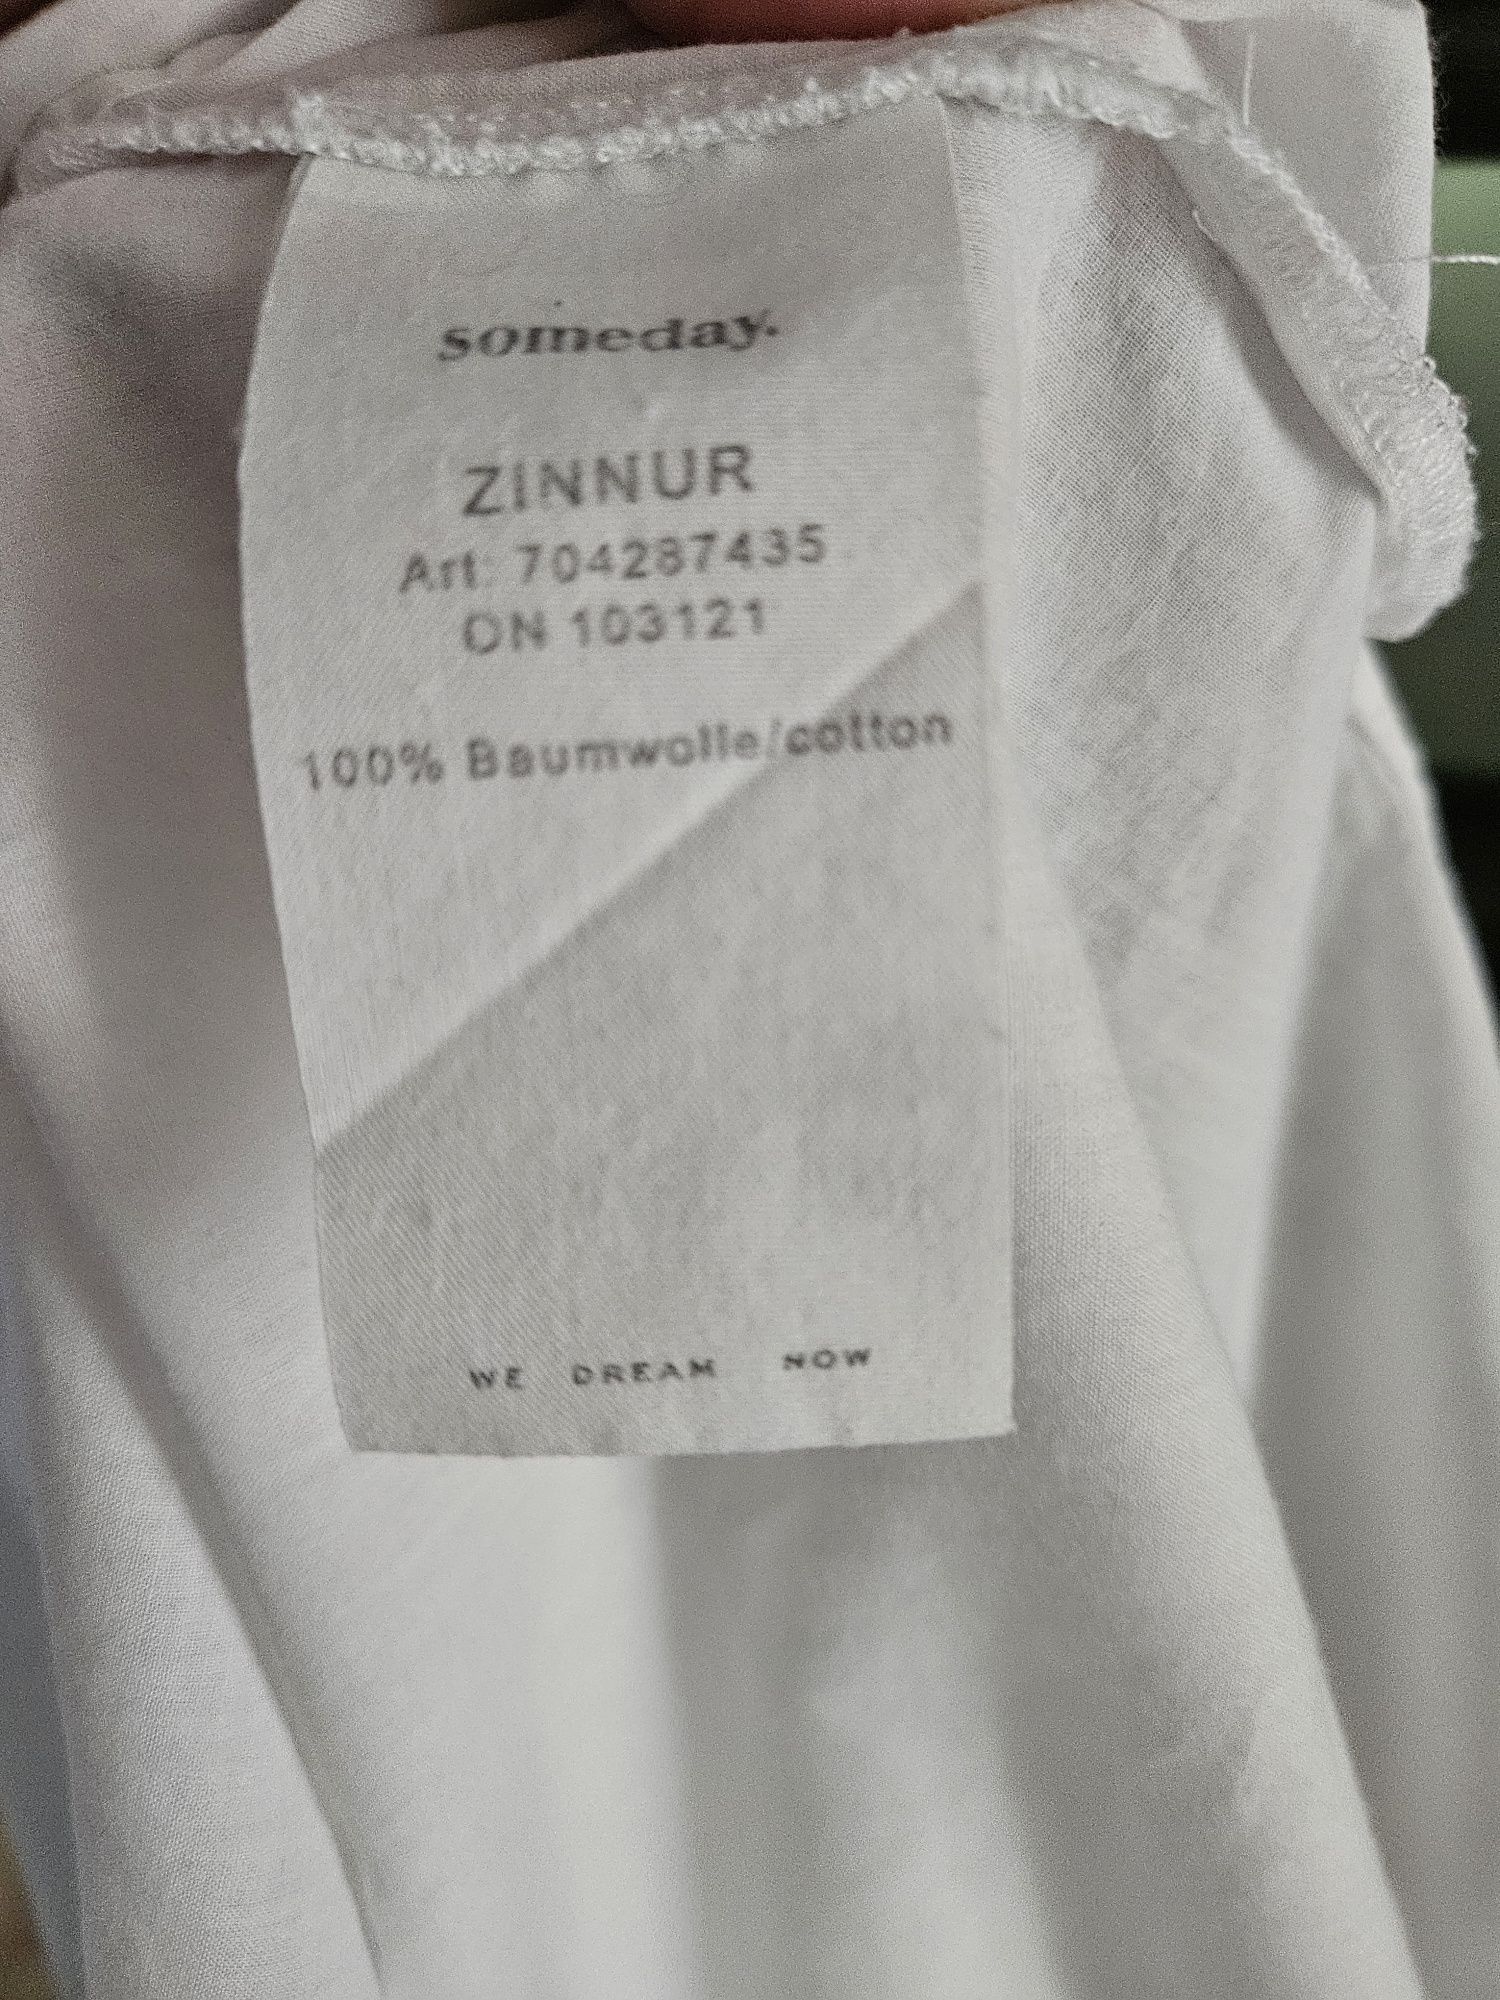 Białą bluzka koszulowa damska XL 100% bawełna